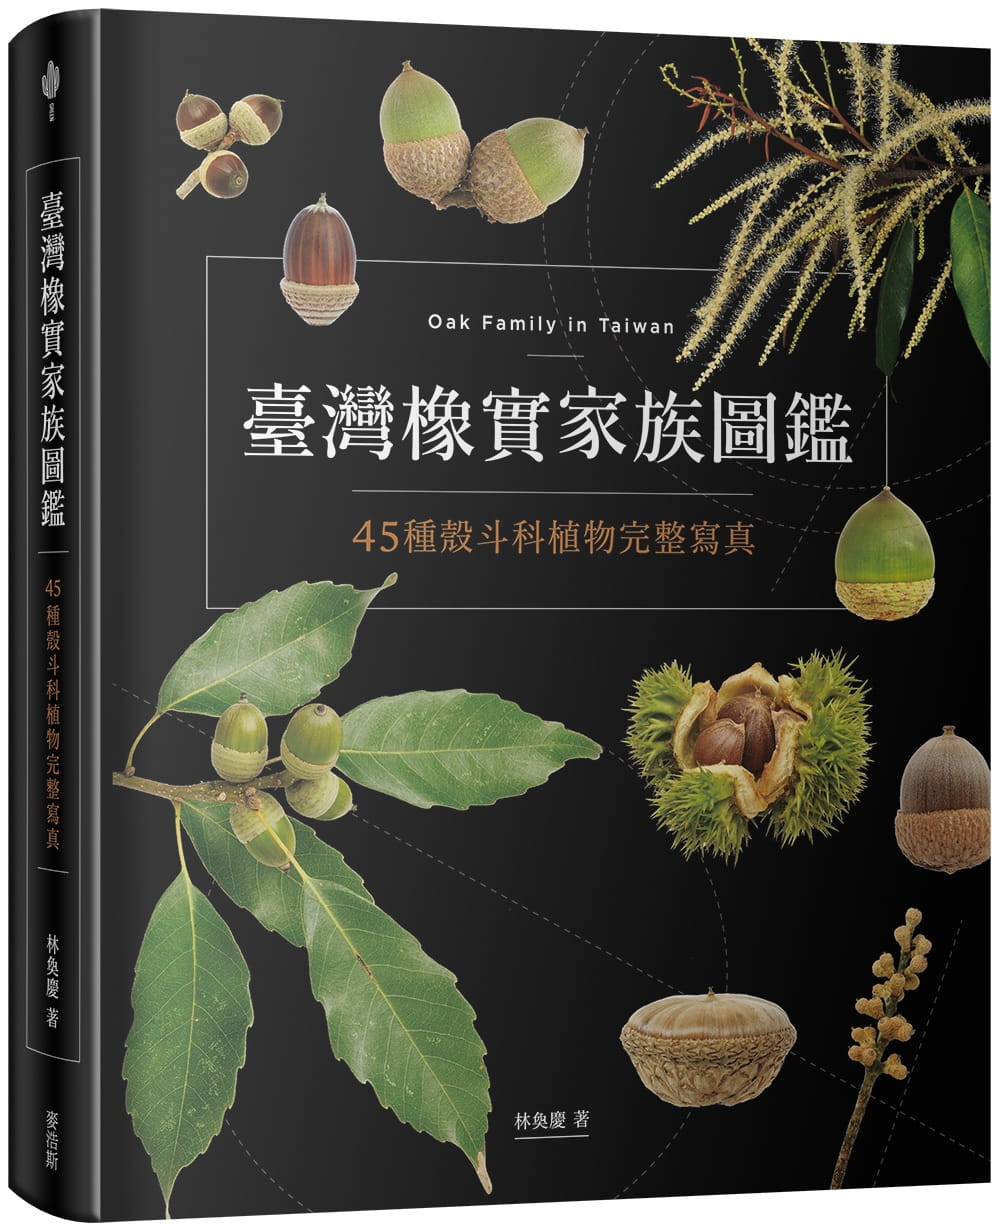 预订台版 台湾橡实家族图鉴 45种壳斗科植物完整写真生活百科植物种植自然教本生活风格书籍麦浩斯